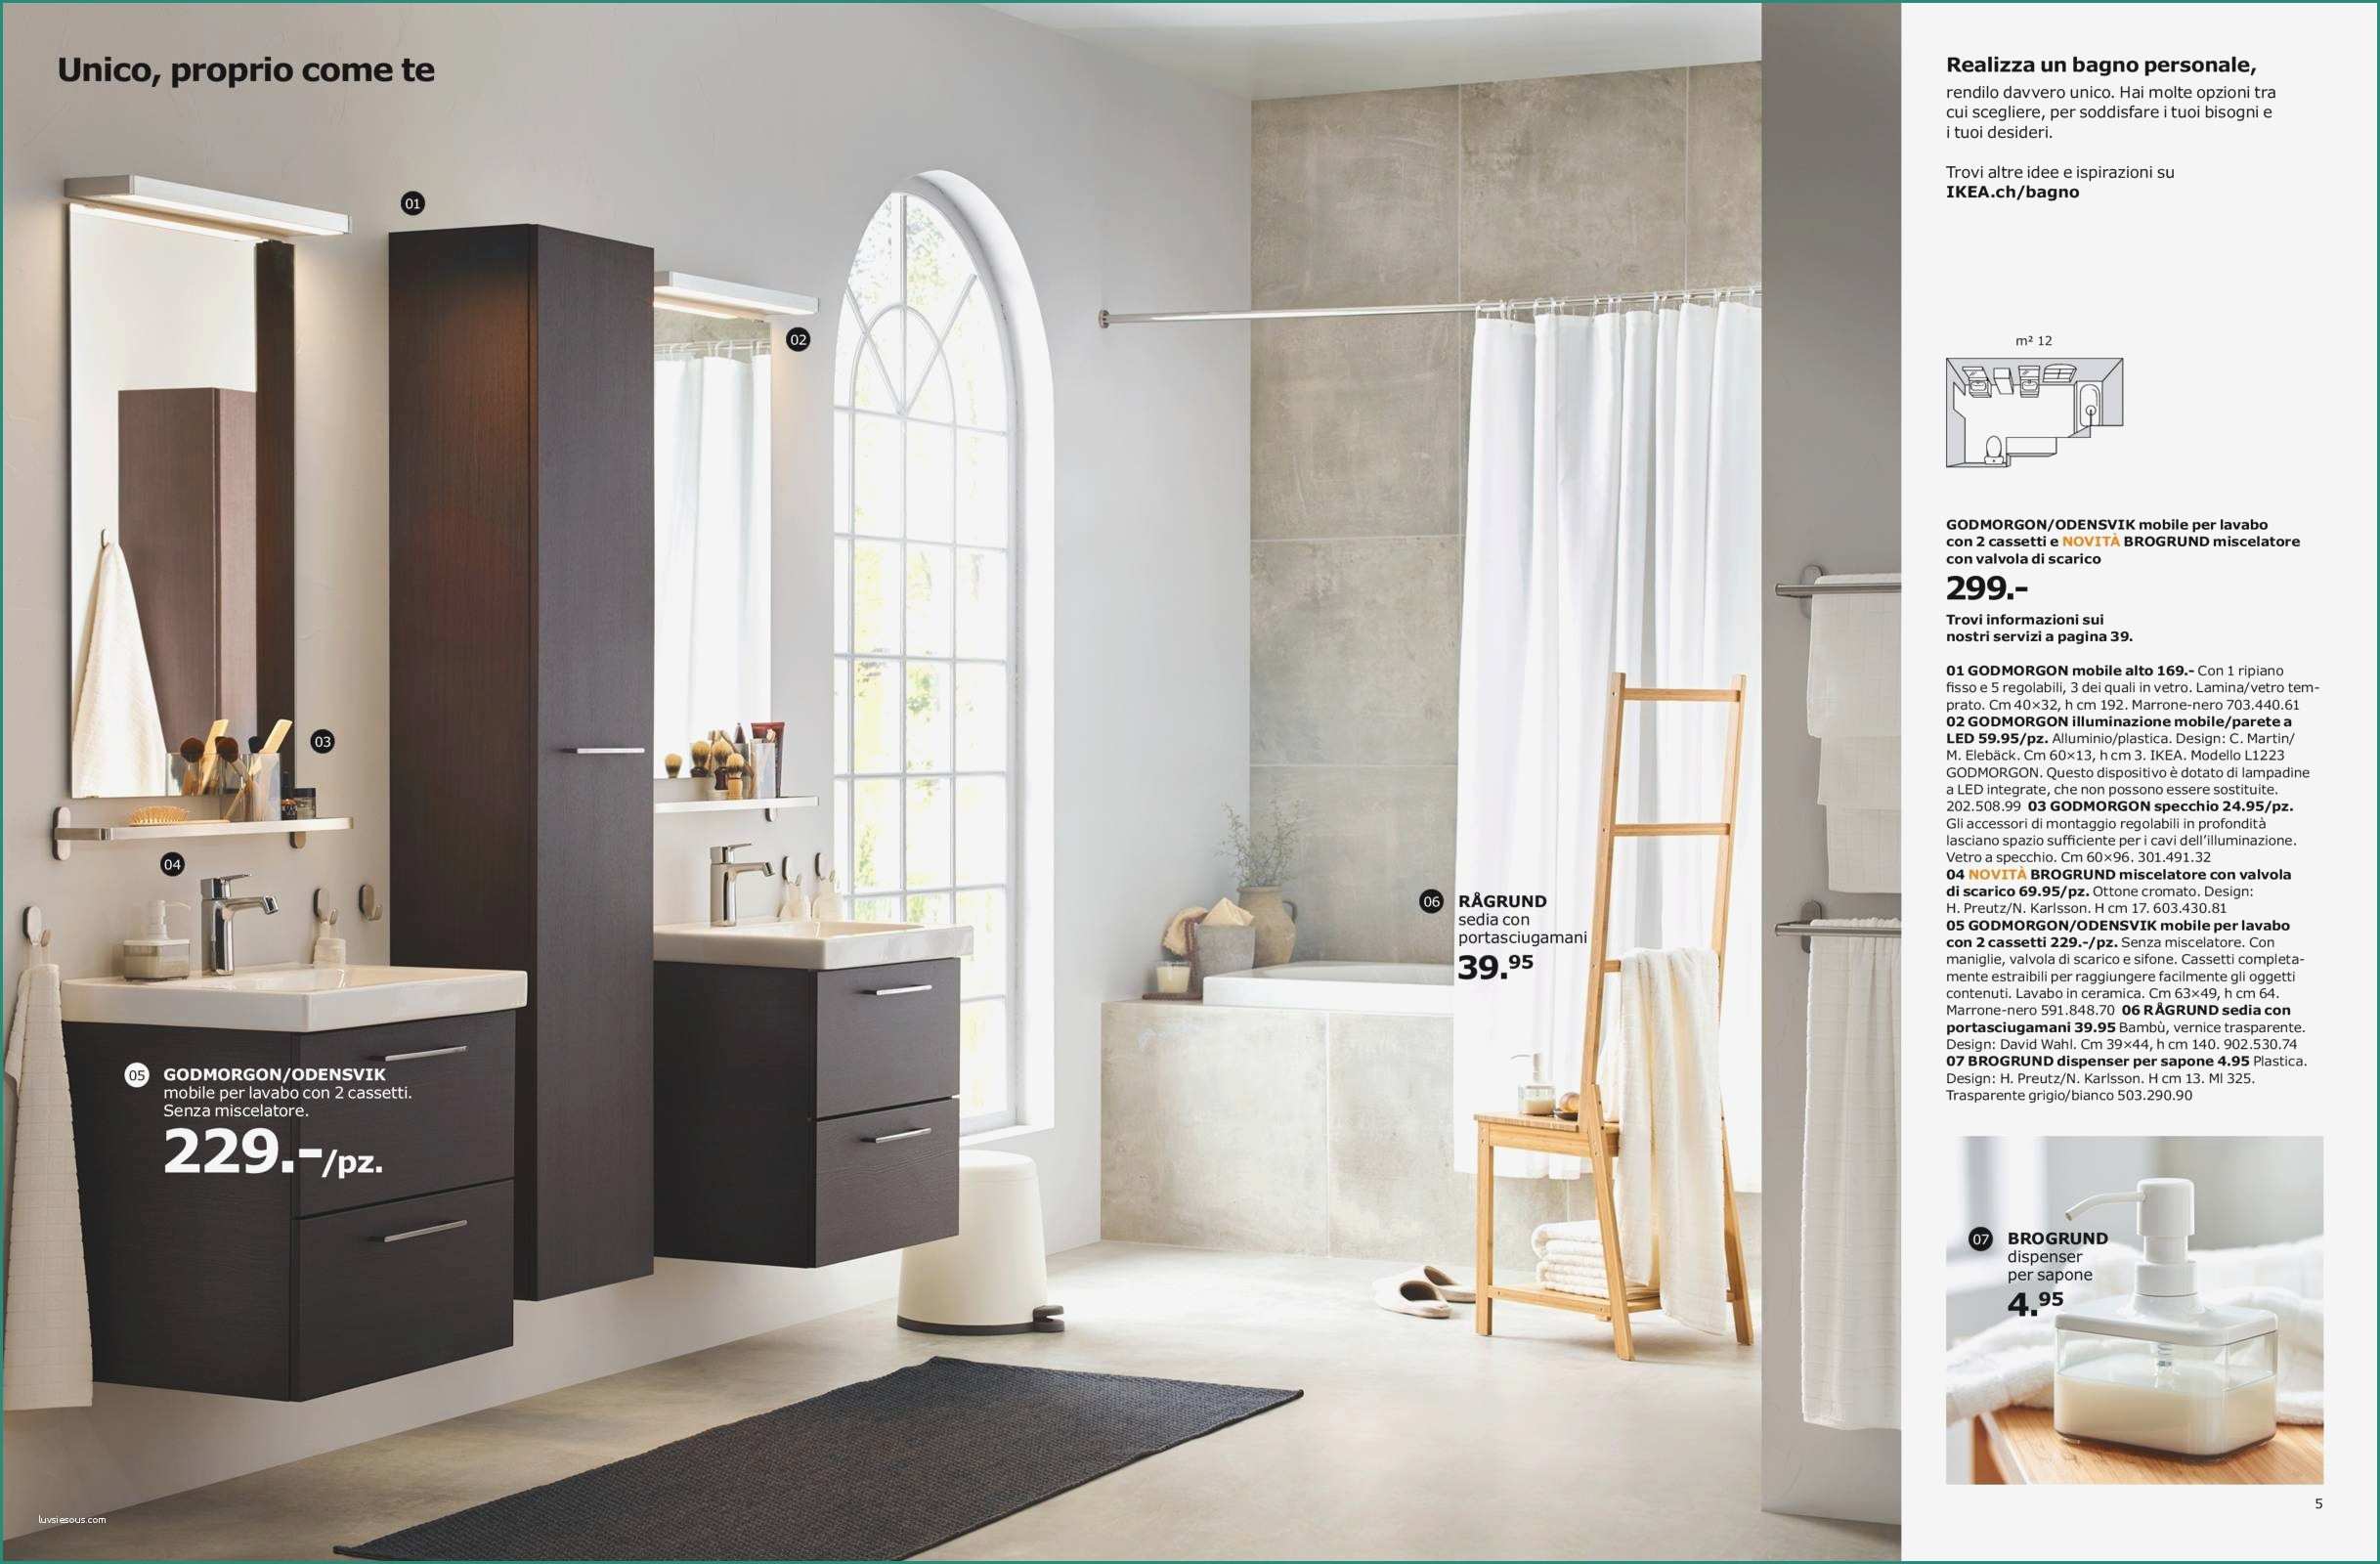 Lavabo Con Mobile Bagno E Elegante Ikea Accessori Bagno Casa Design Idee Su Arredamento